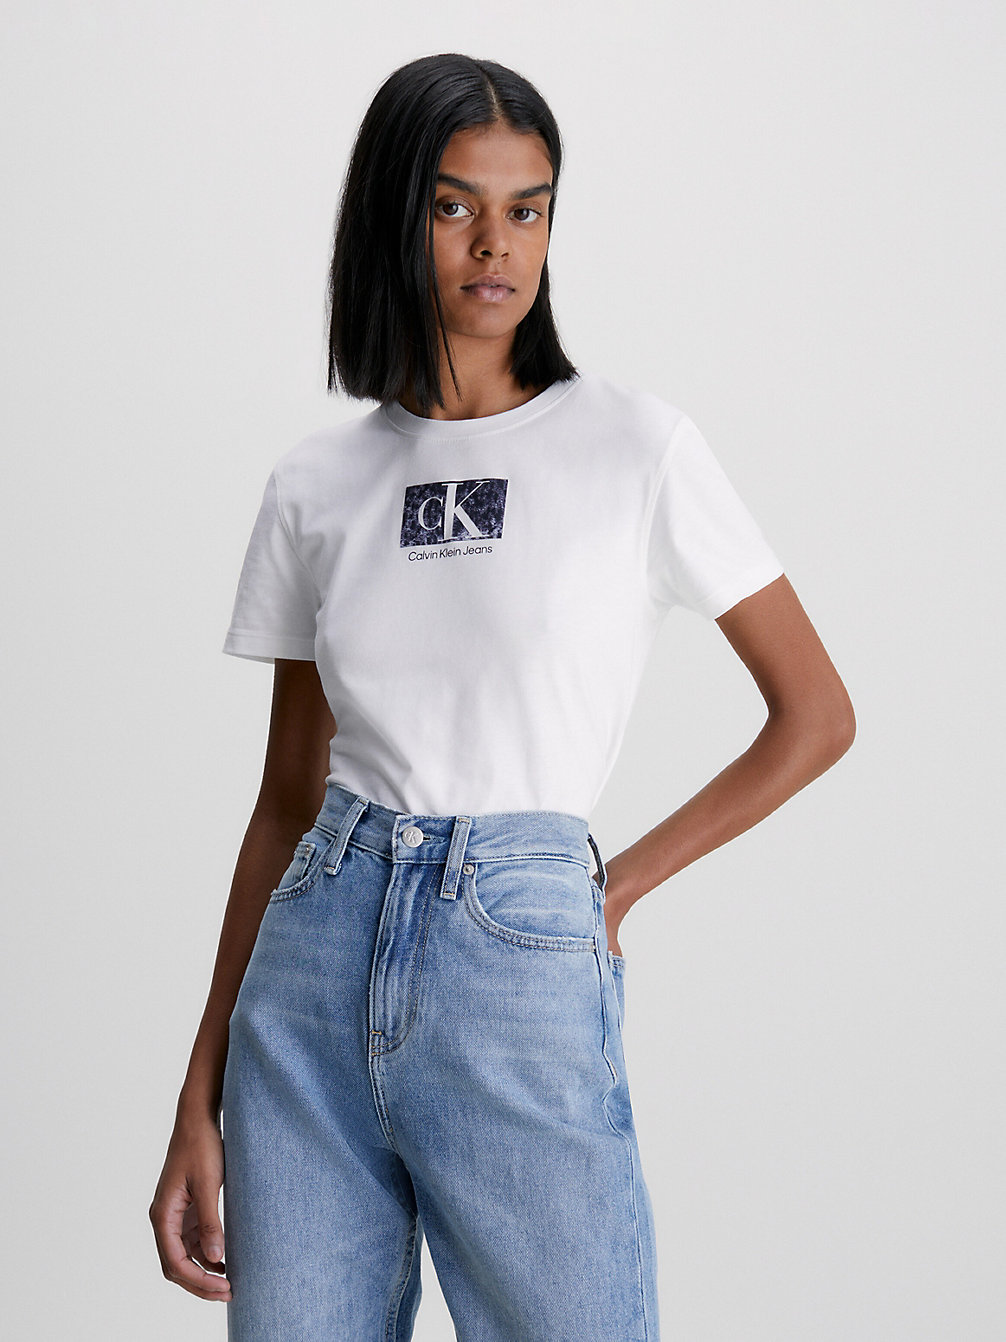 BRIGHT WHITE > Schmales Logo-T-Shirt Aus Bio-Baumwolle > undefined Damen - Calvin Klein